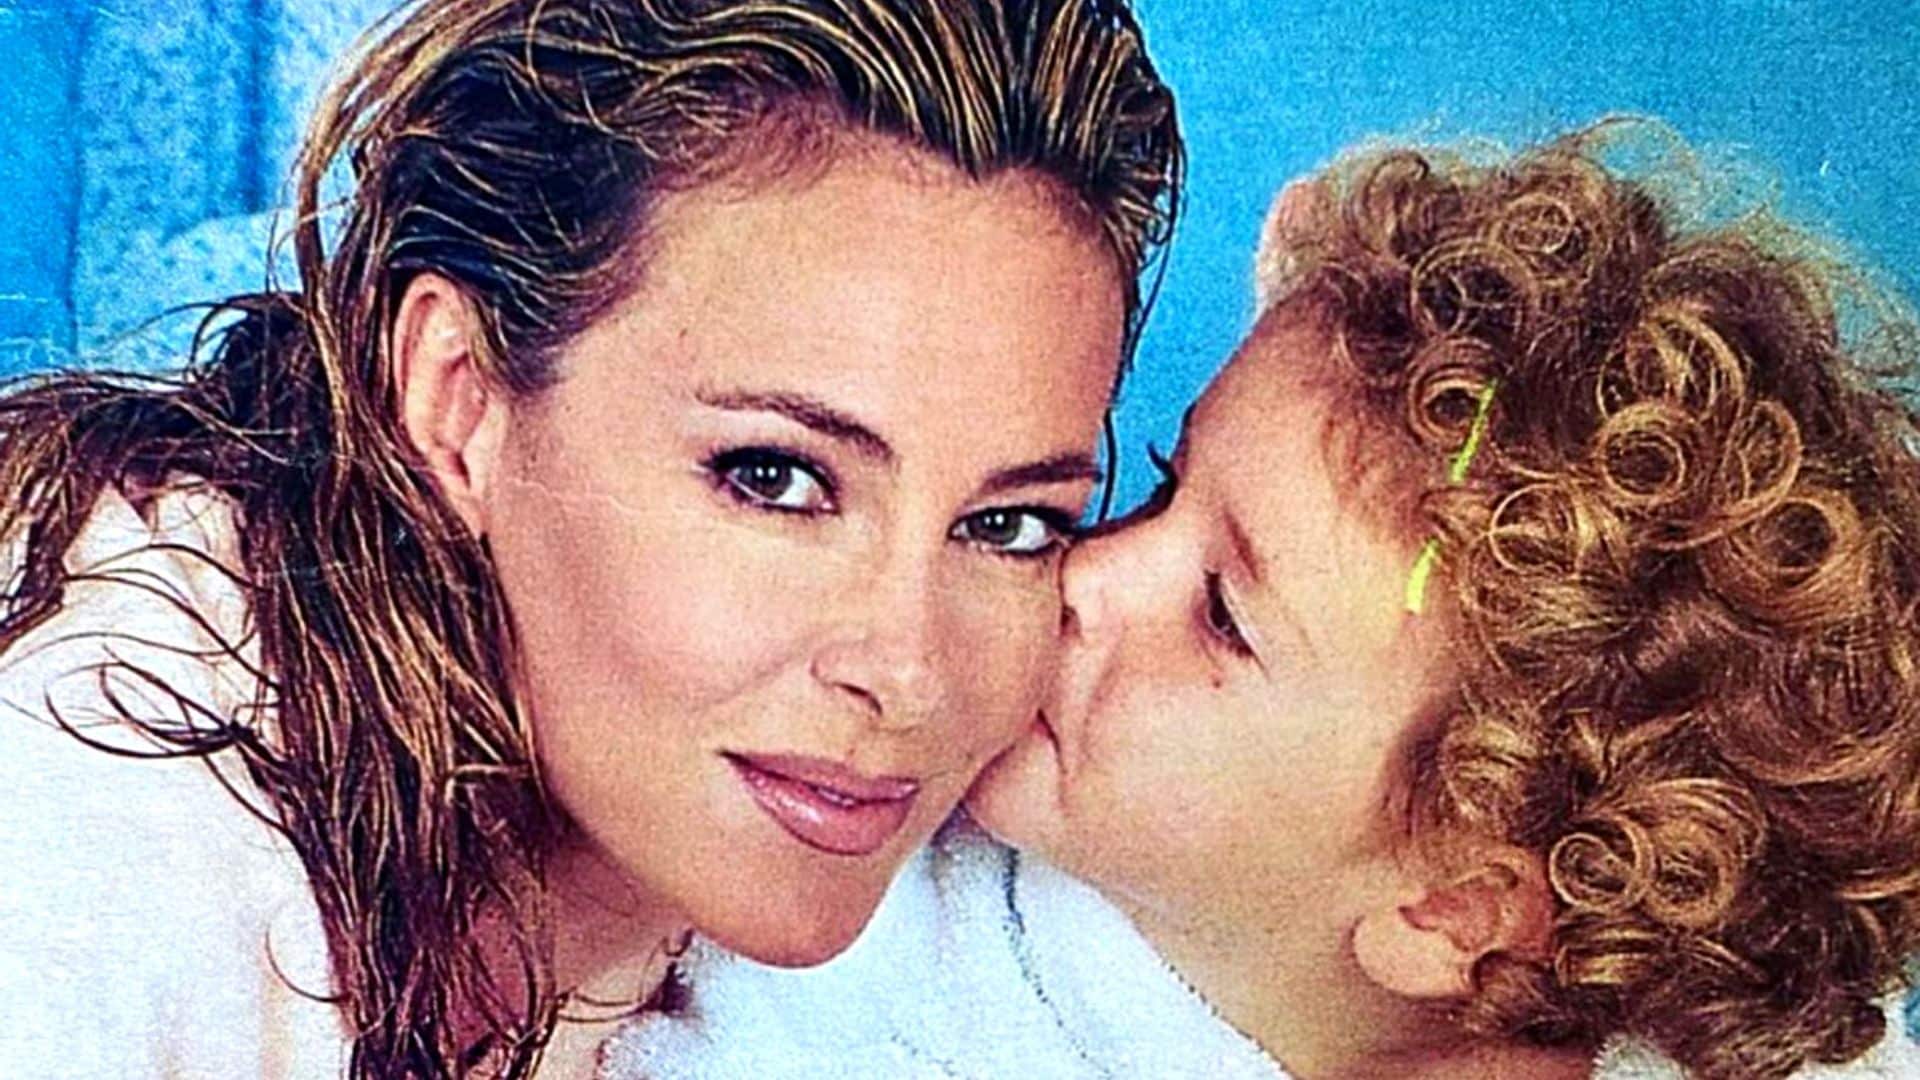 El hermoso recuerdo de Ana Obregón a su hijo Aless cuando se cumplen 9 meses de su fallecimiento